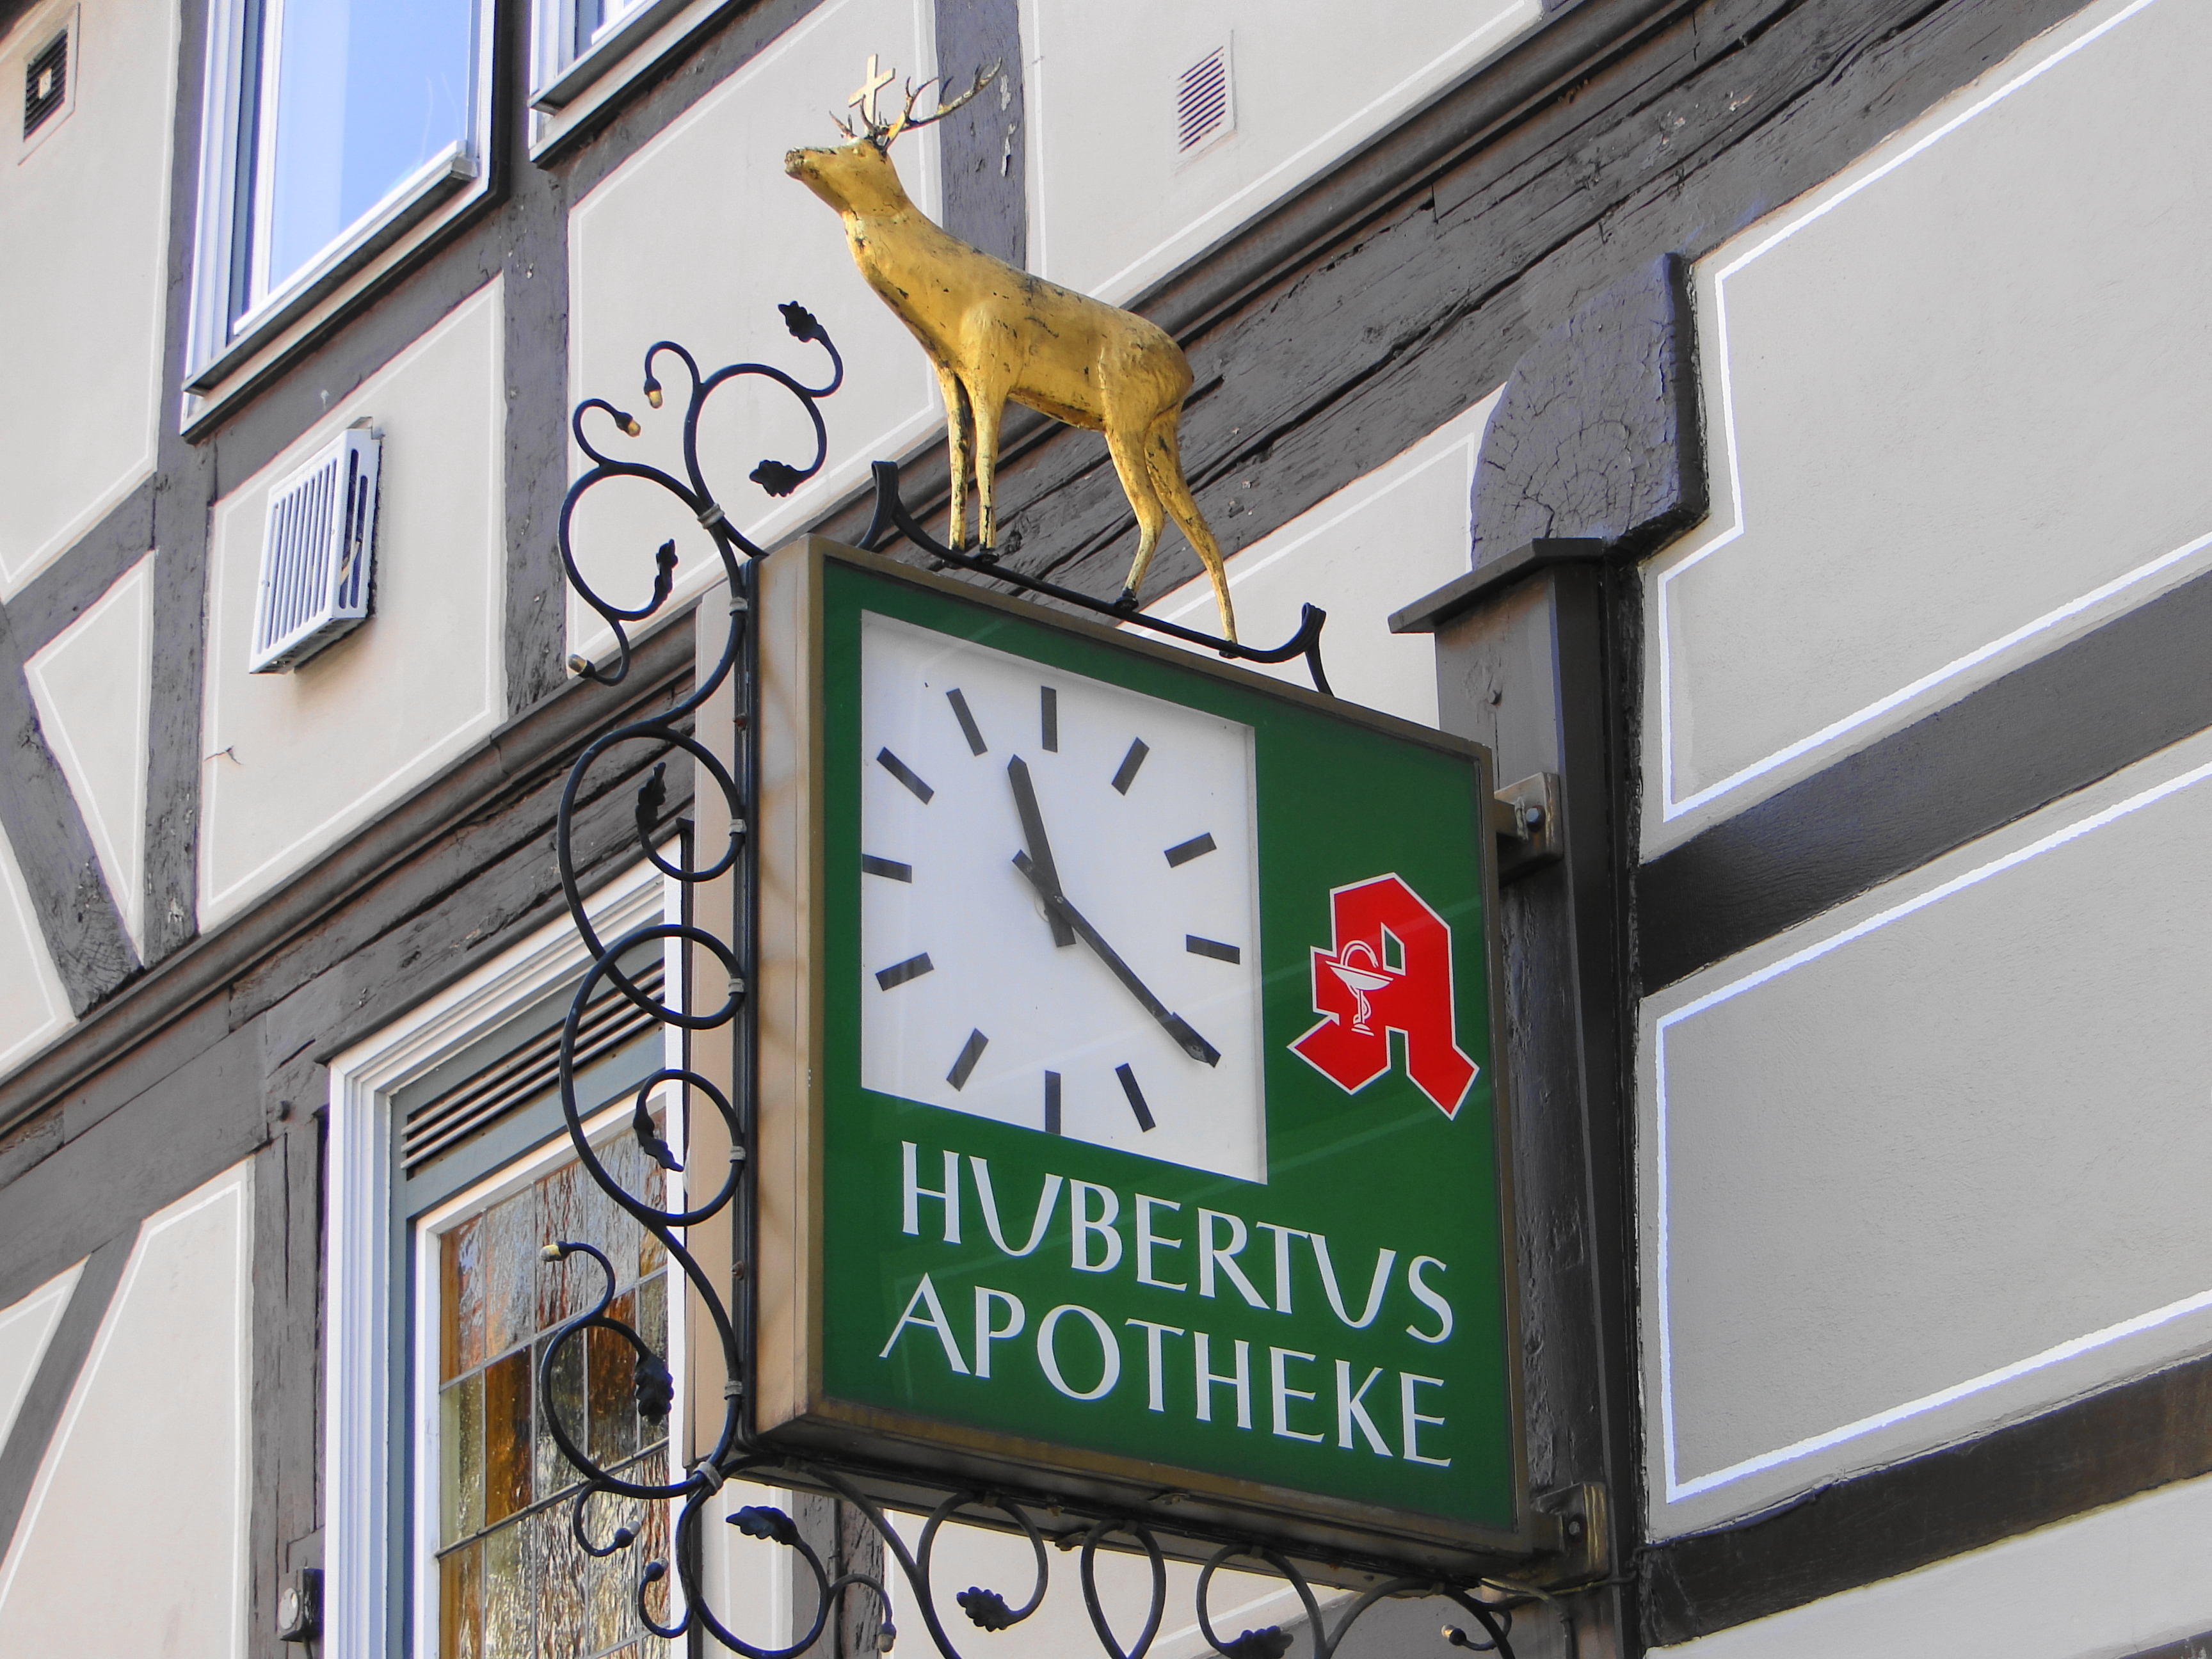 Hubertus Apotheke, Uhr mit Werbeschild in der Kurzen-Geismar-Str. 32